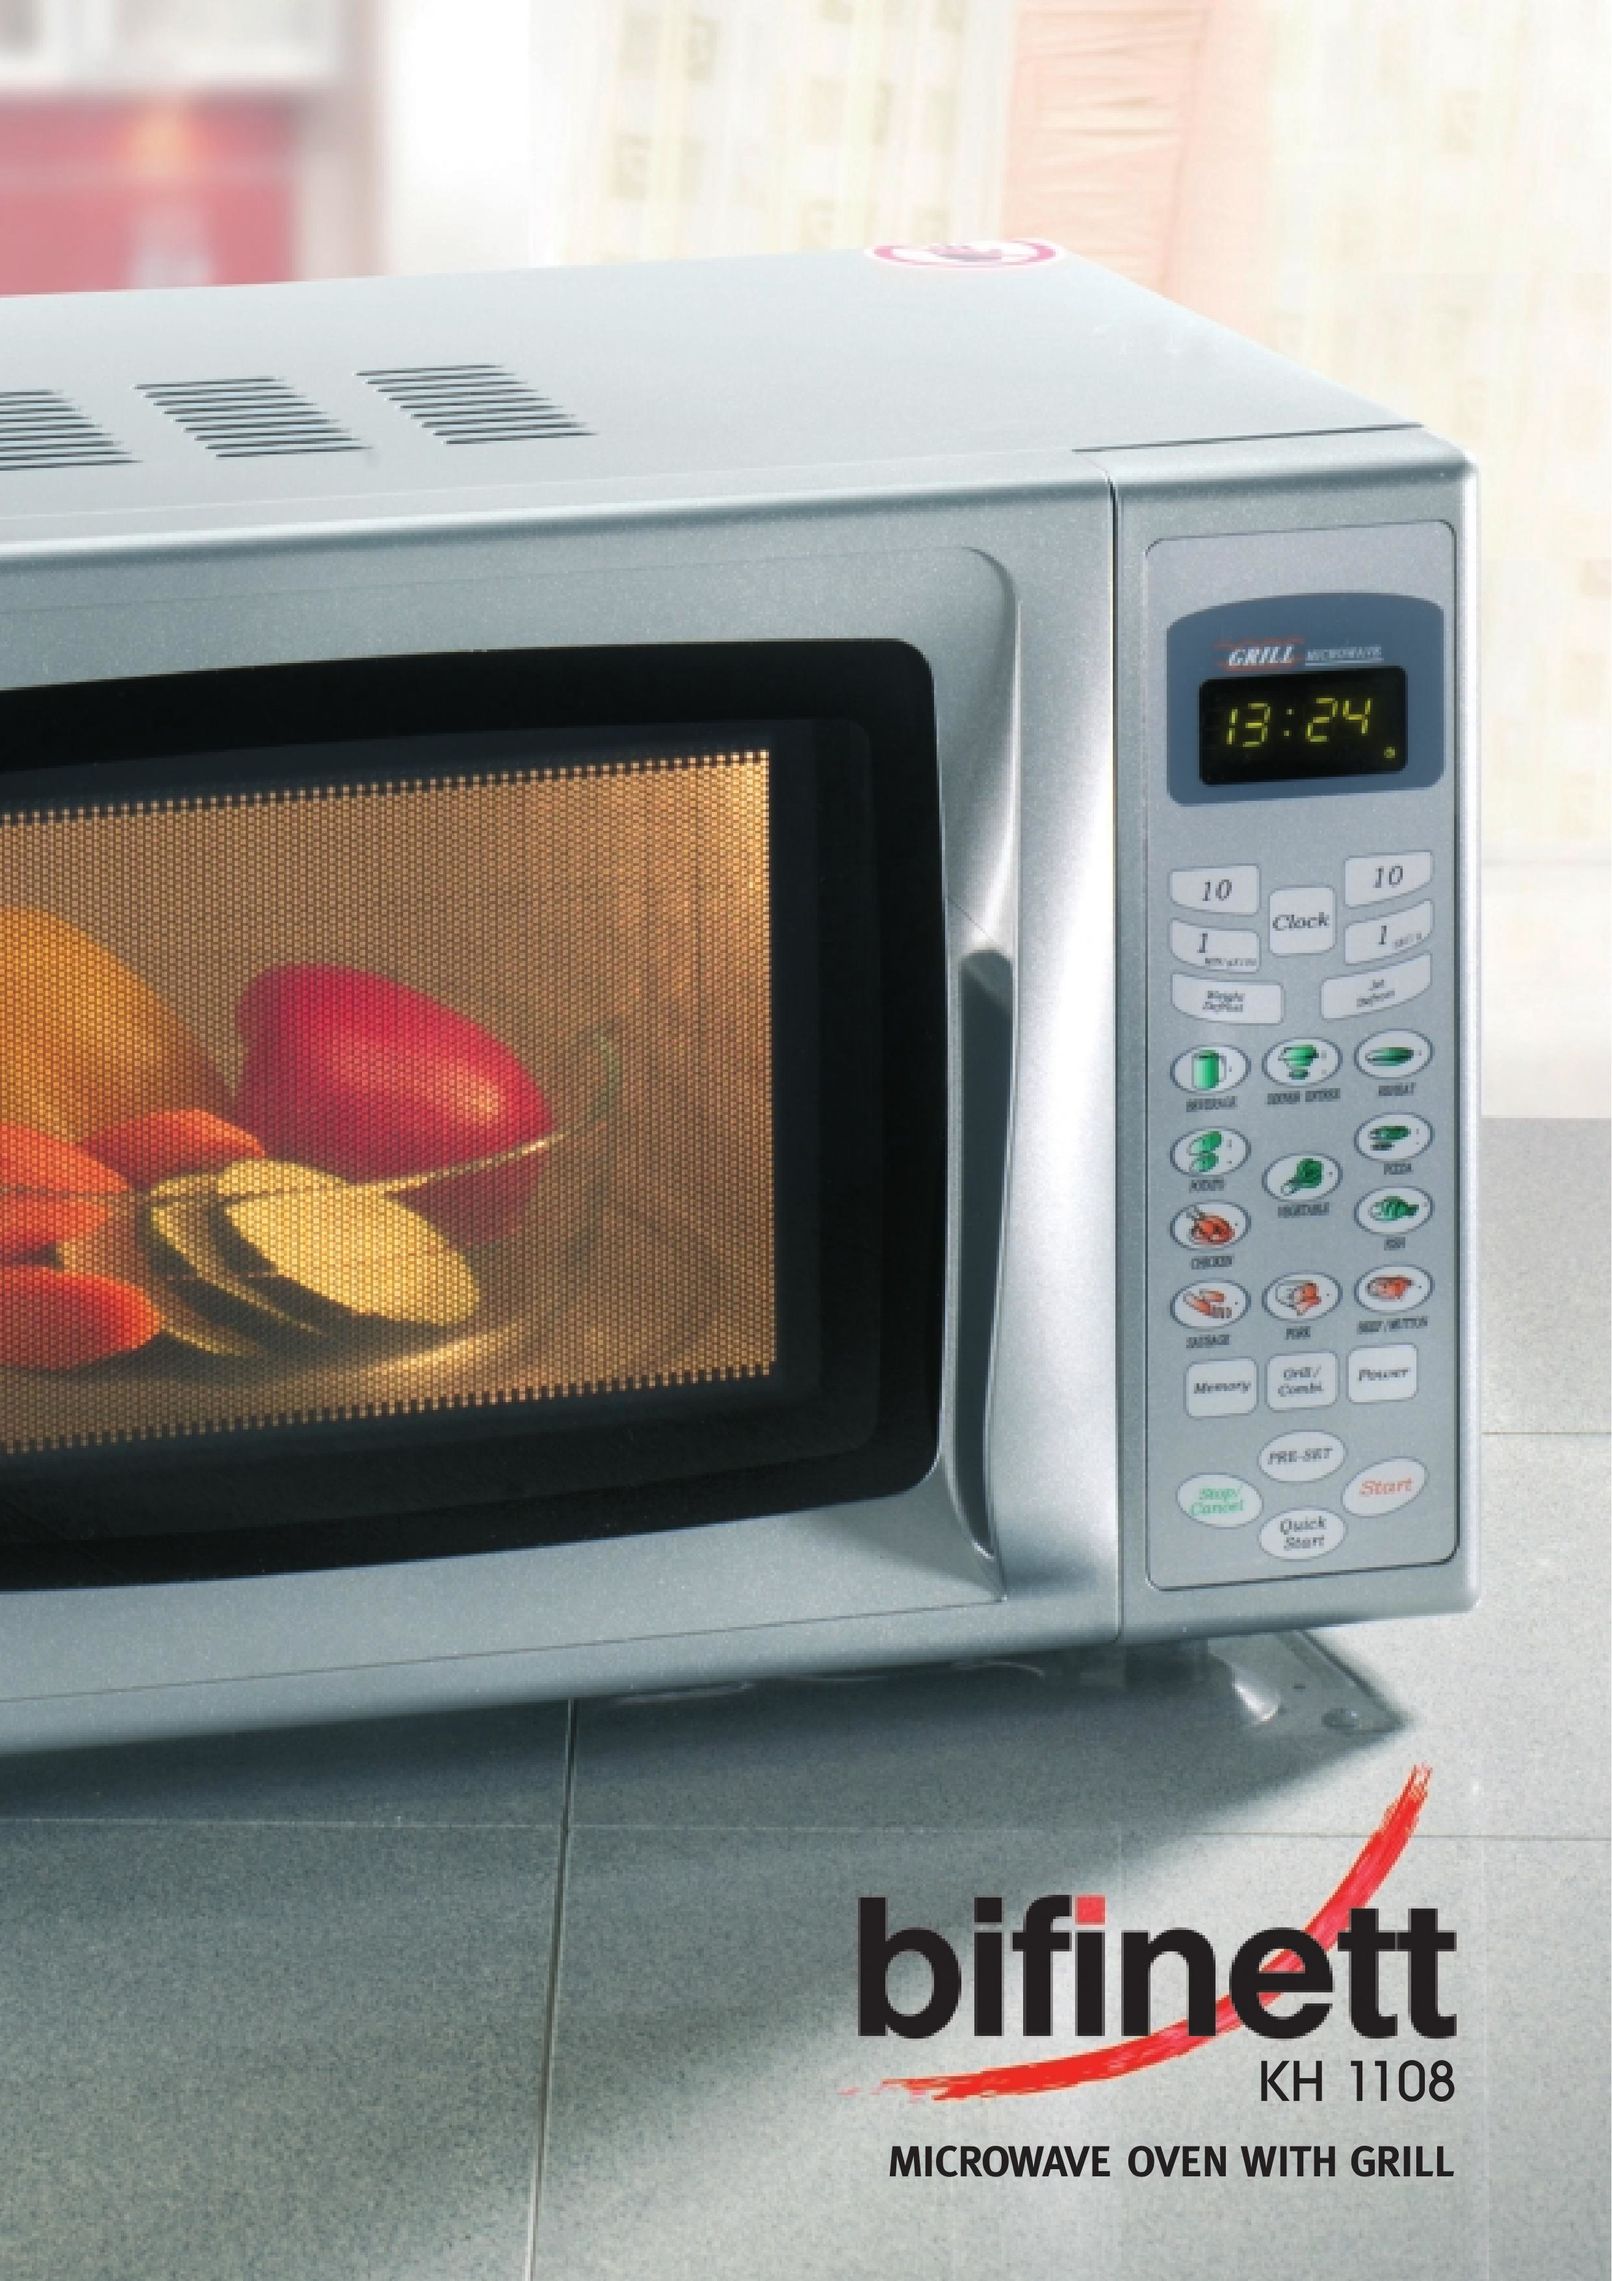 Bifinett KH 1108 Microwave Oven User Manual